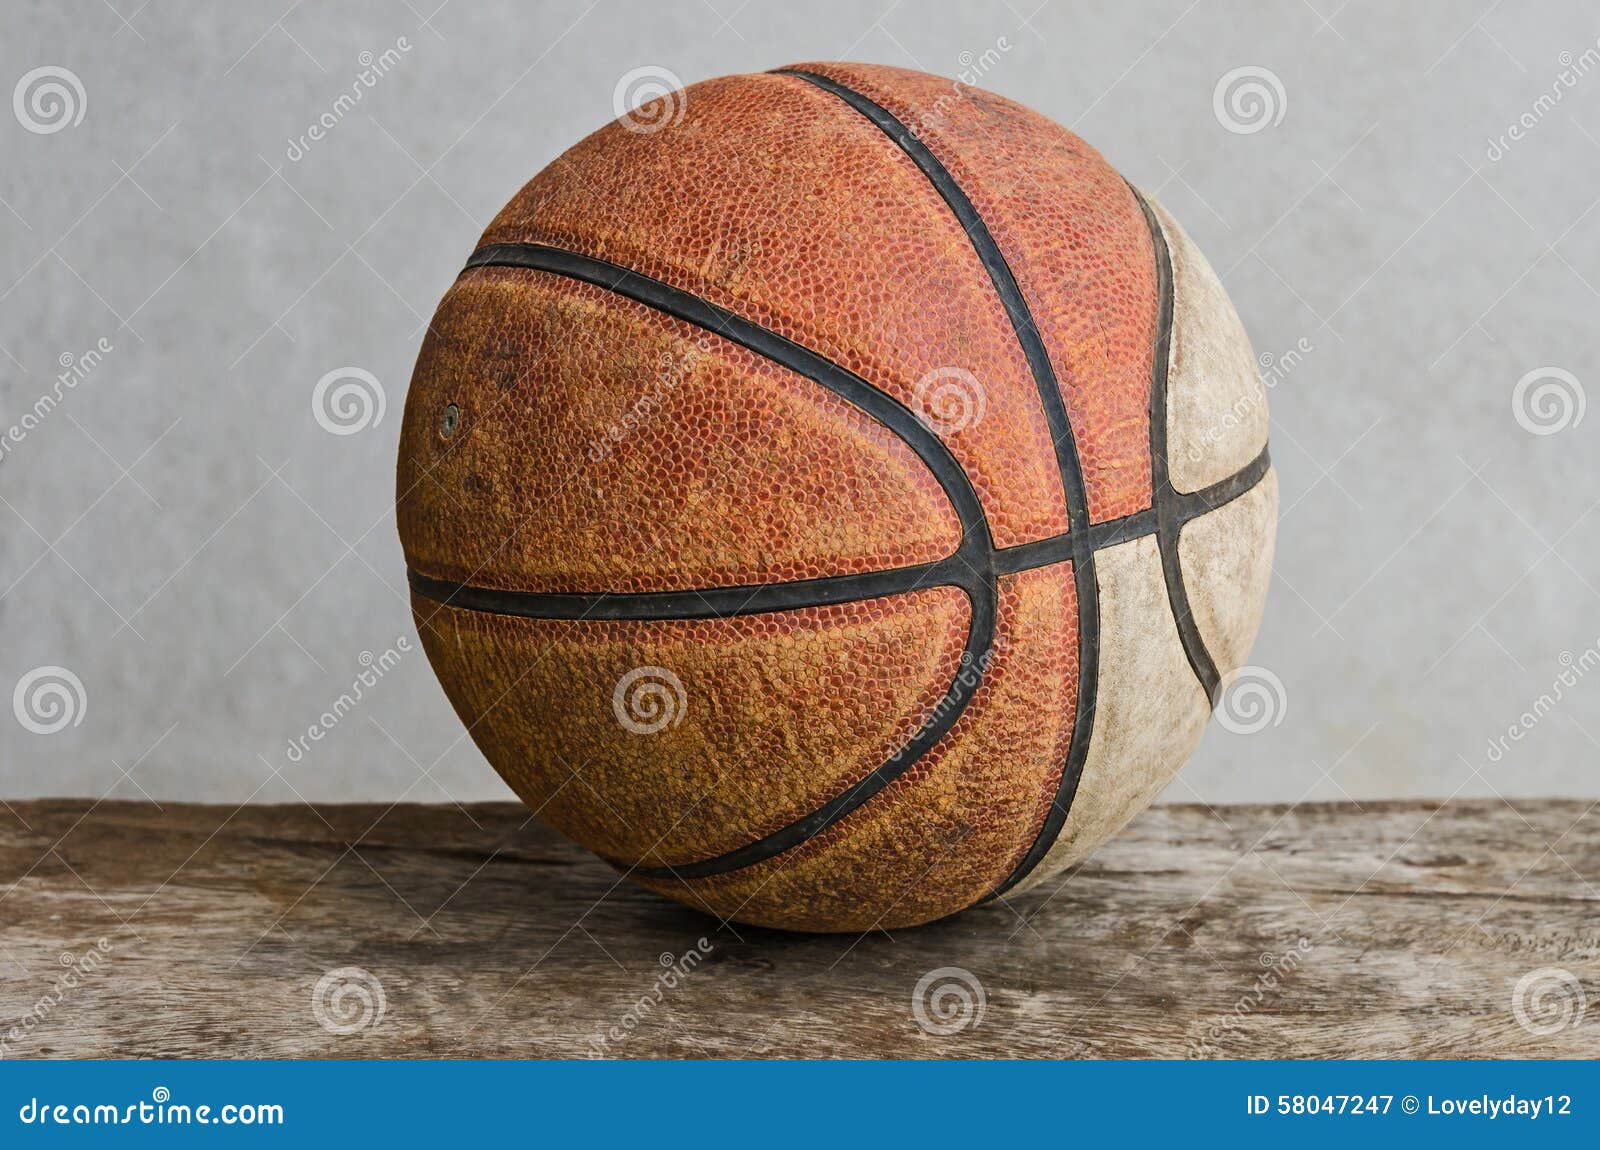 old basketball